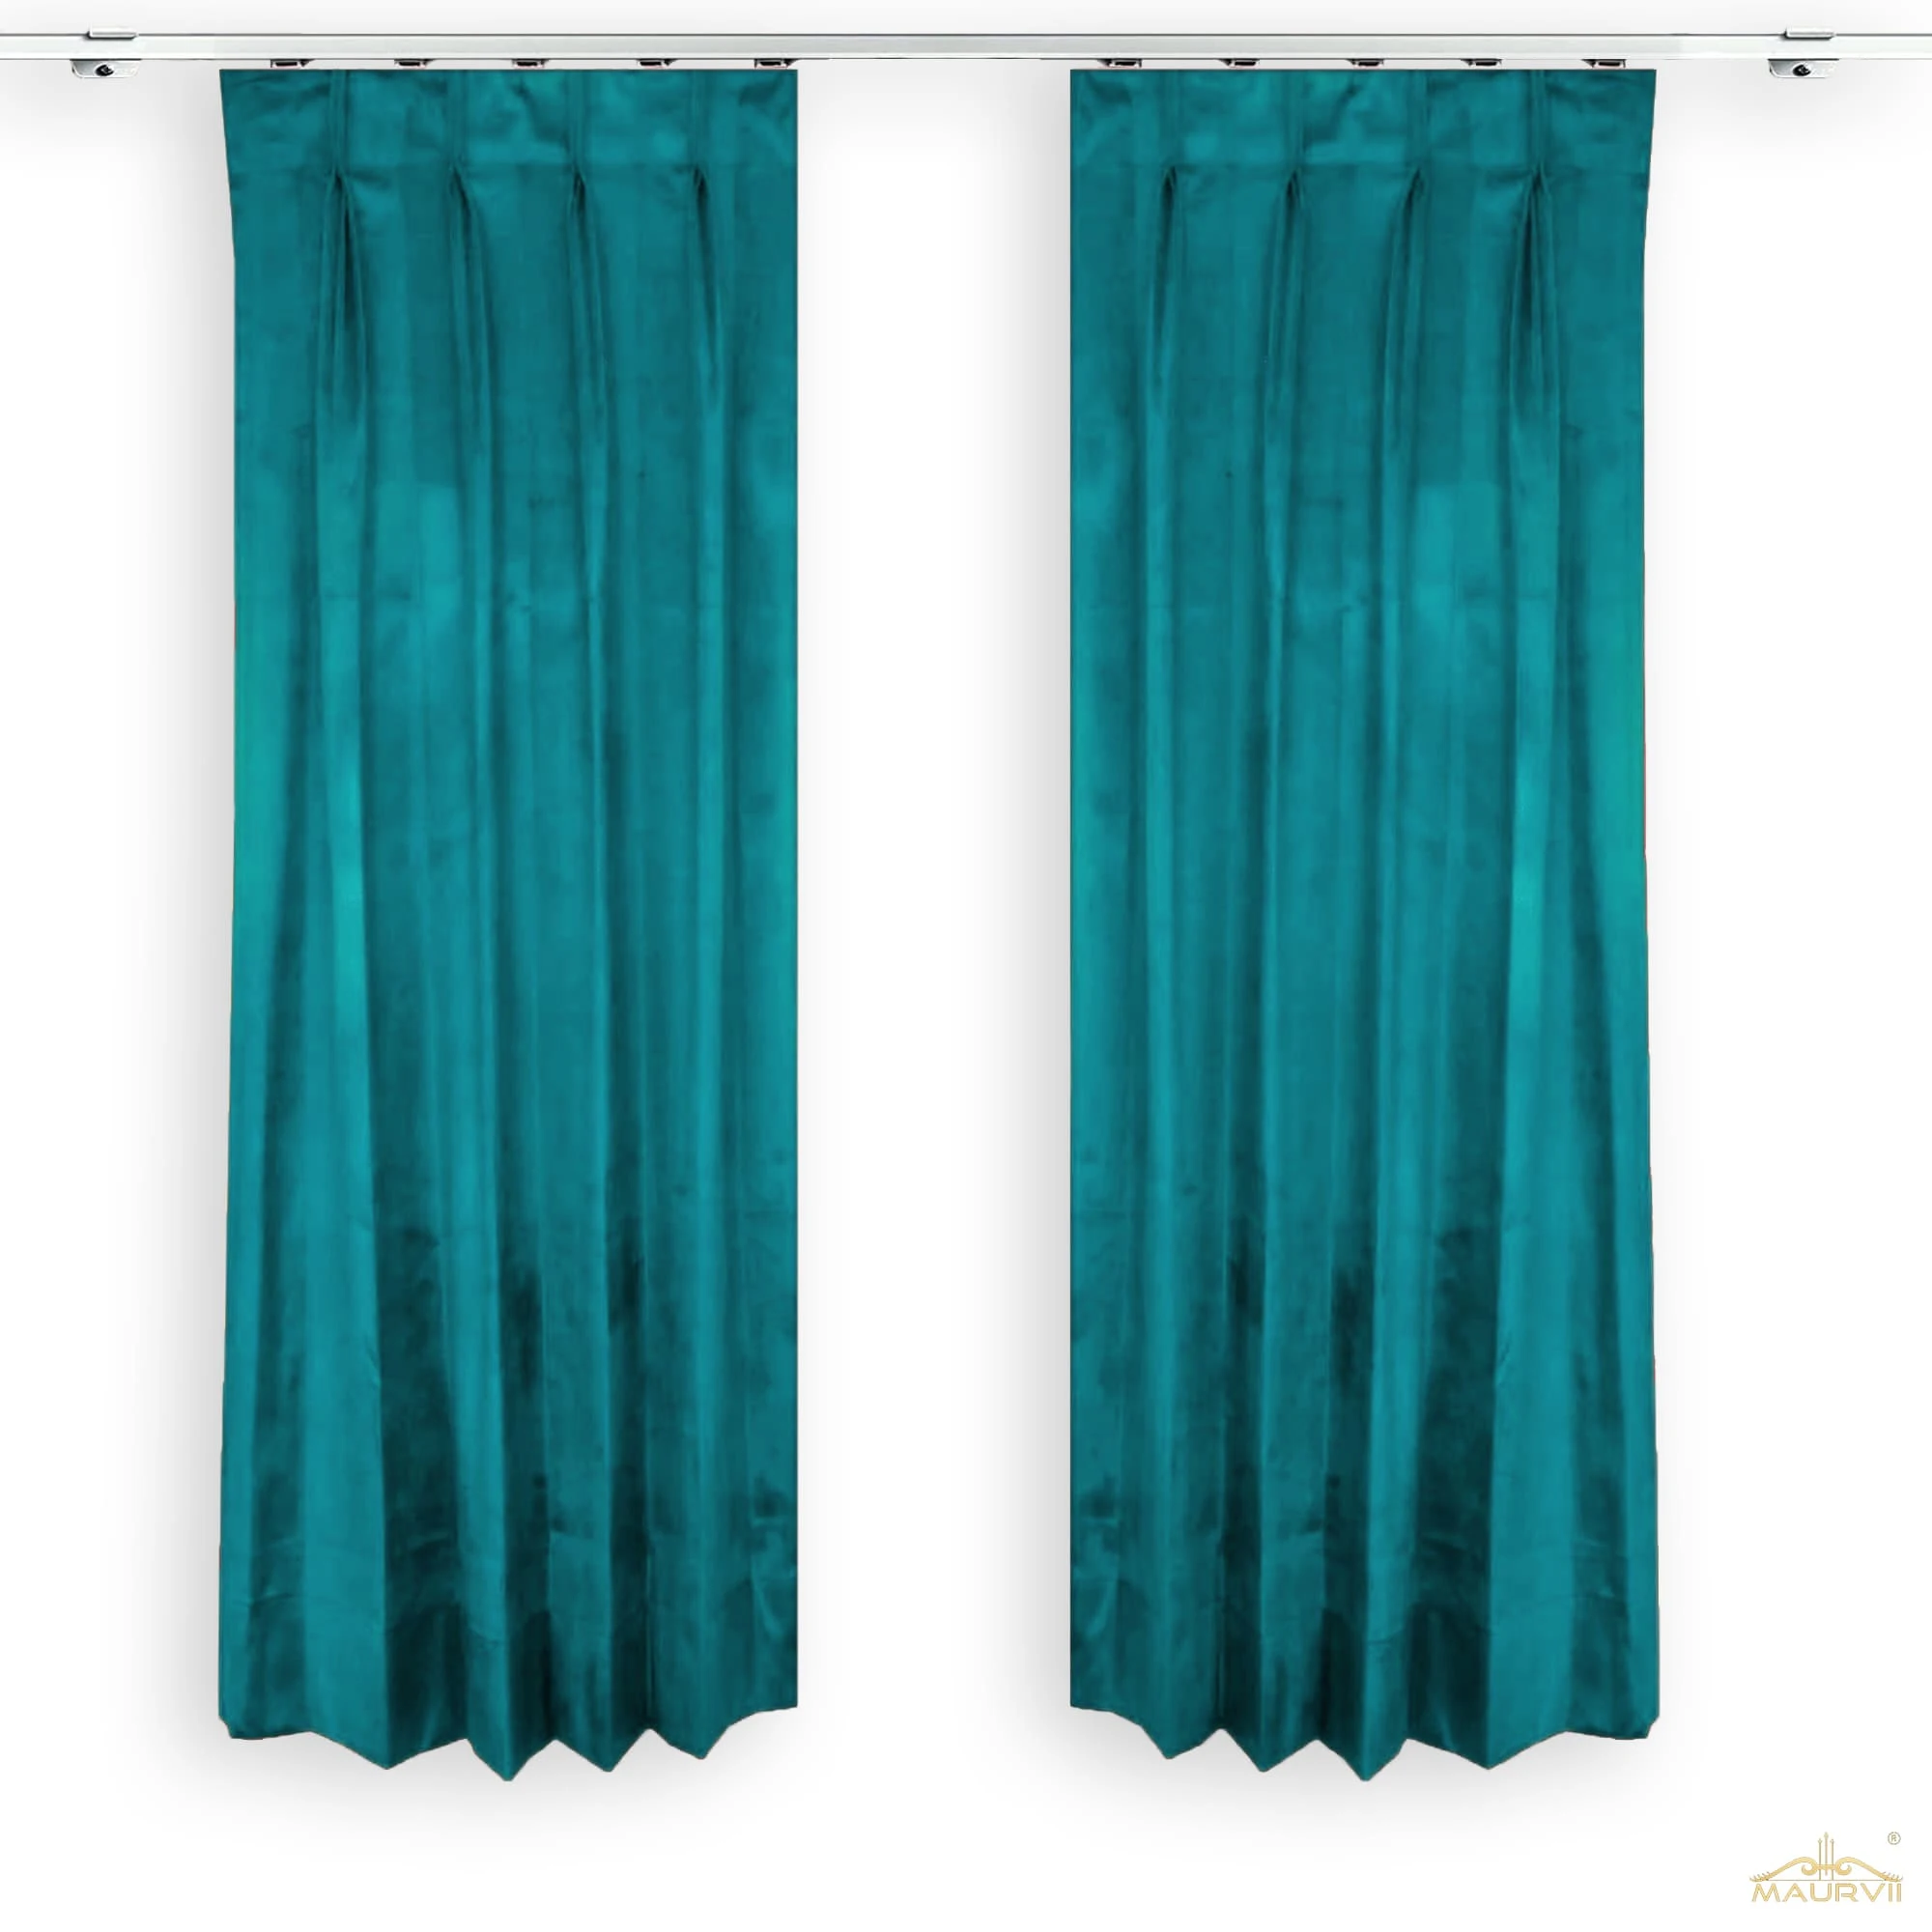 Aqua living room curtains